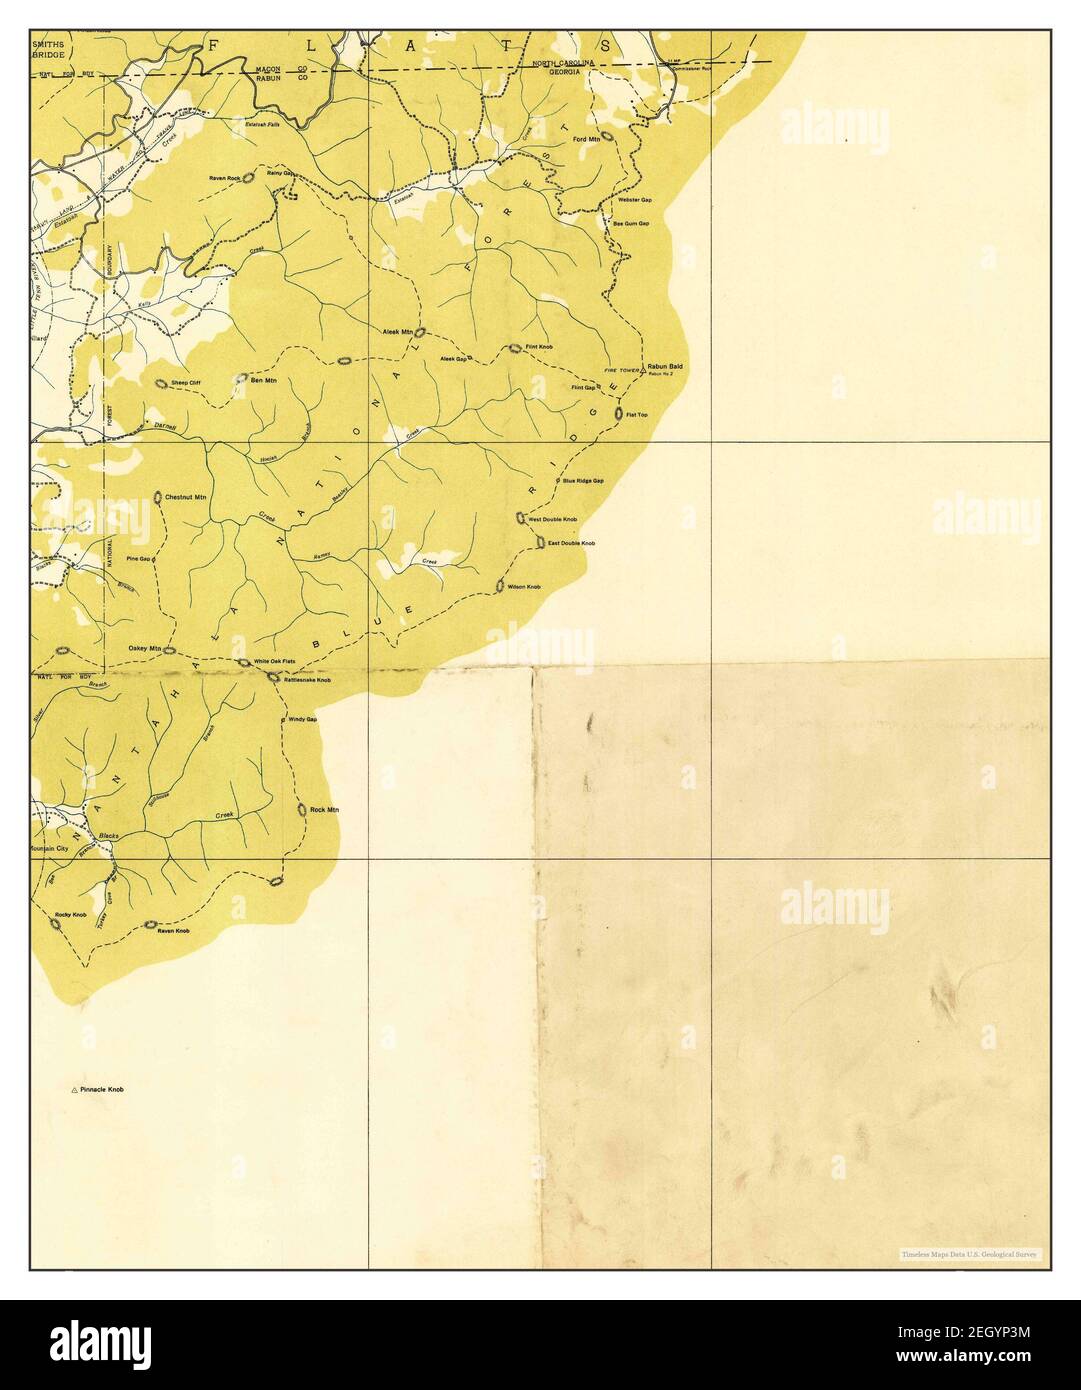 Rabun bald, Georgia, map 1935, 1:24000, Vereinigte Staaten von Amerika von Timeless Maps, Data U.S. Geological Survey Stockfoto